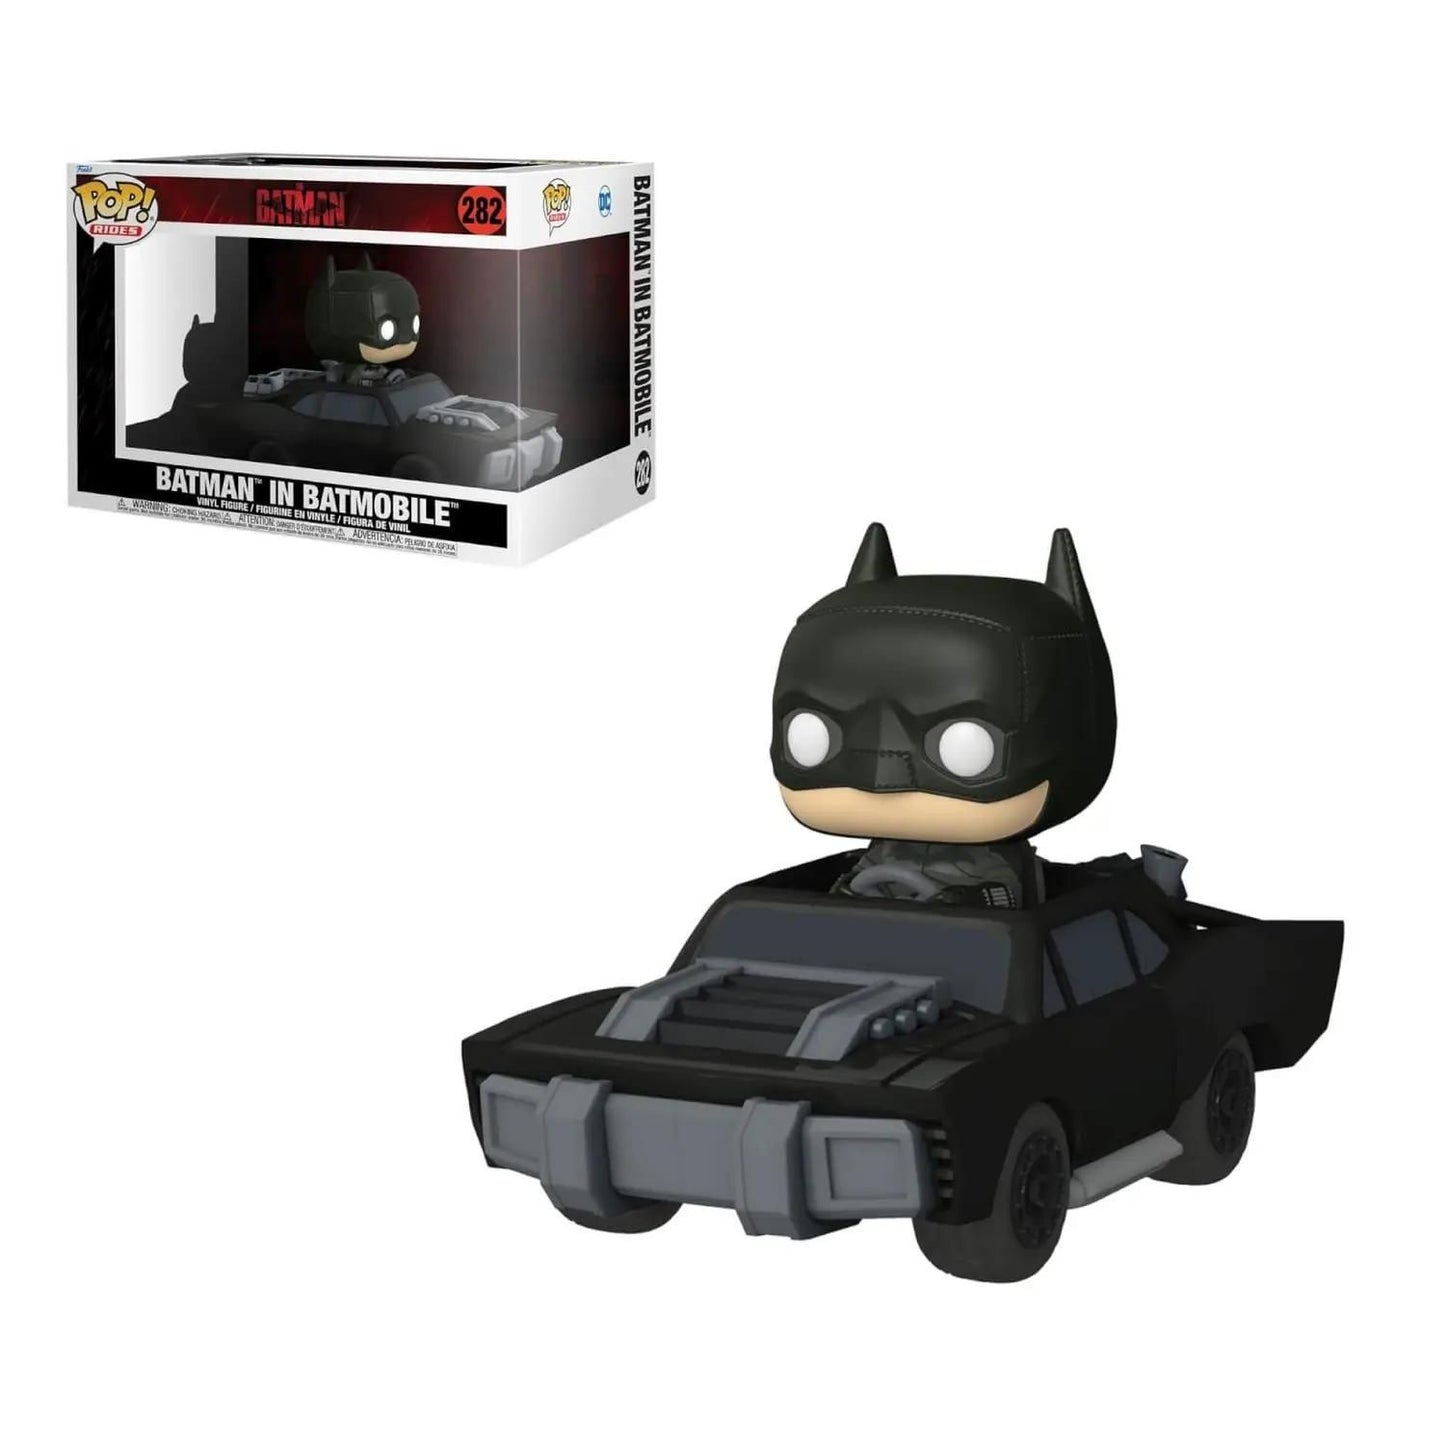 The Batman Batman in Batmobile Pop!